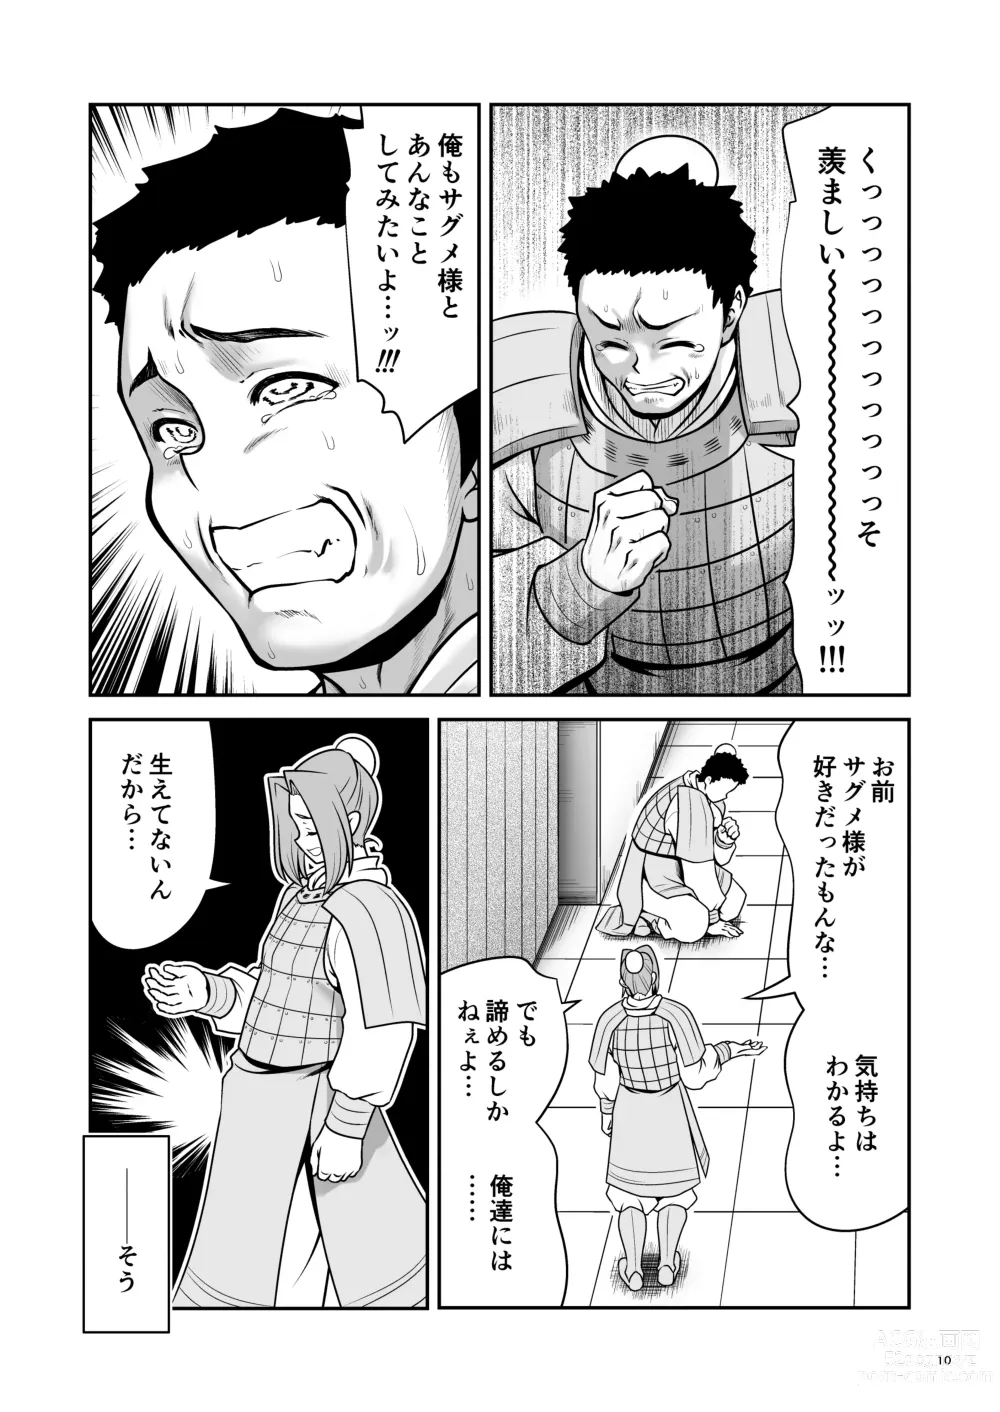 Page 10 of doujinshi Nureru Tsuki no Miyako Kanzenban